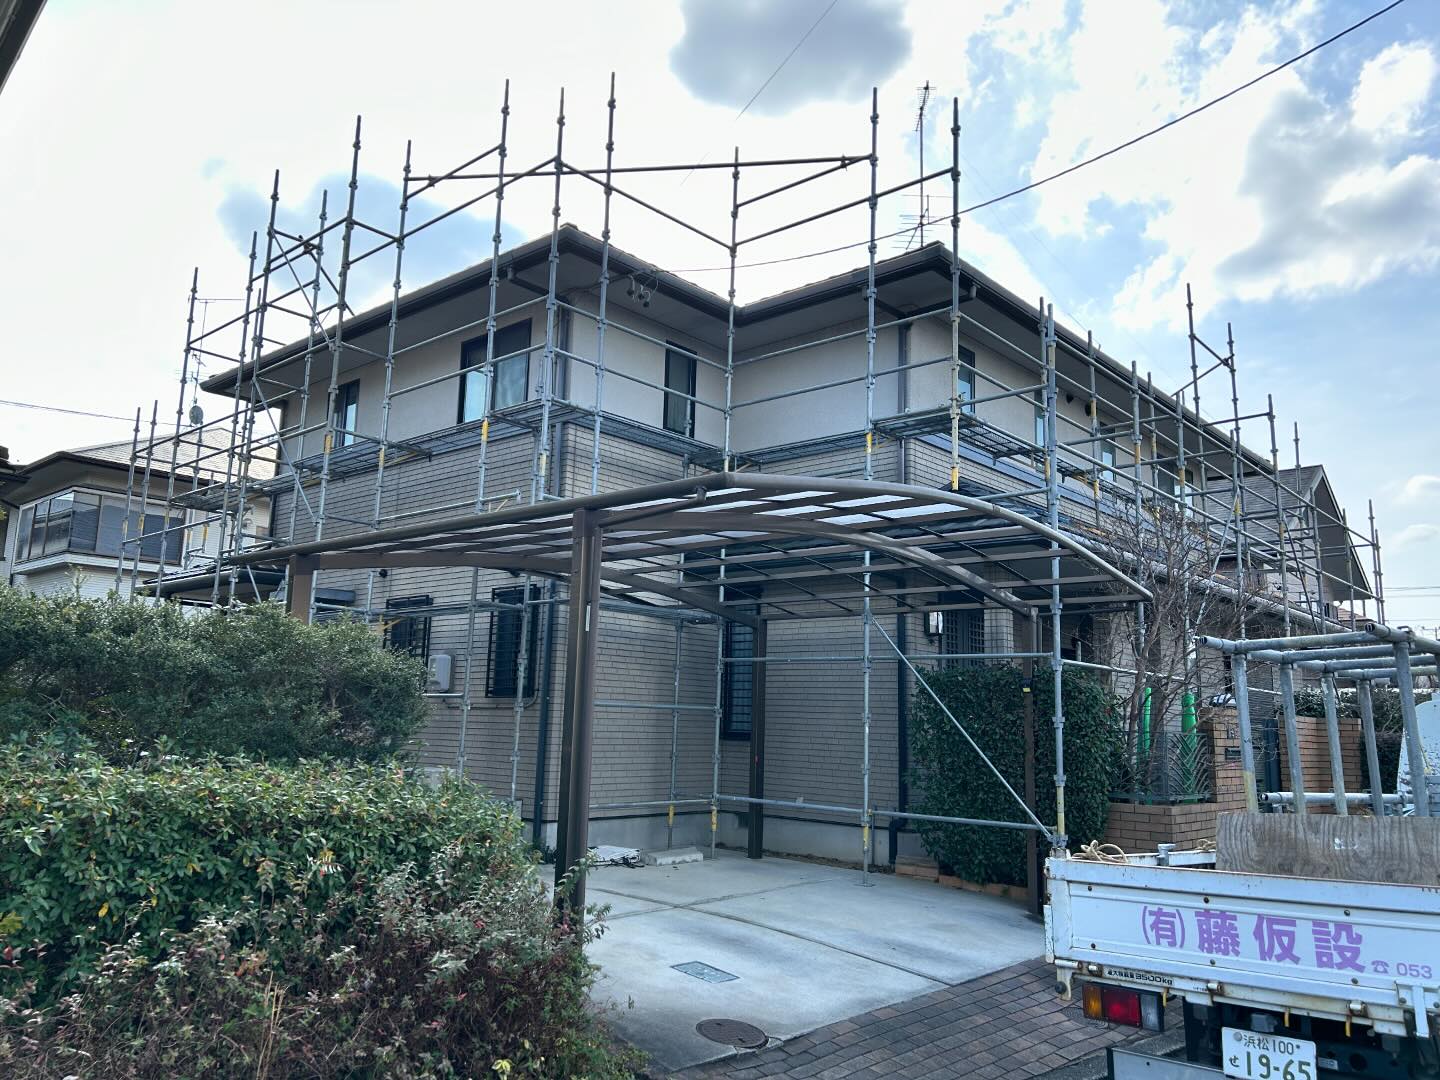 今日の塗装工事

浜松市浜名区新都田のＦ様邸の
足場の組み立て工事が完了しました。

こちらのお宅は、
新築から２０数年経ちましたが
初めての塗り替えになります。

これから、我々で
新築によみがえらせます